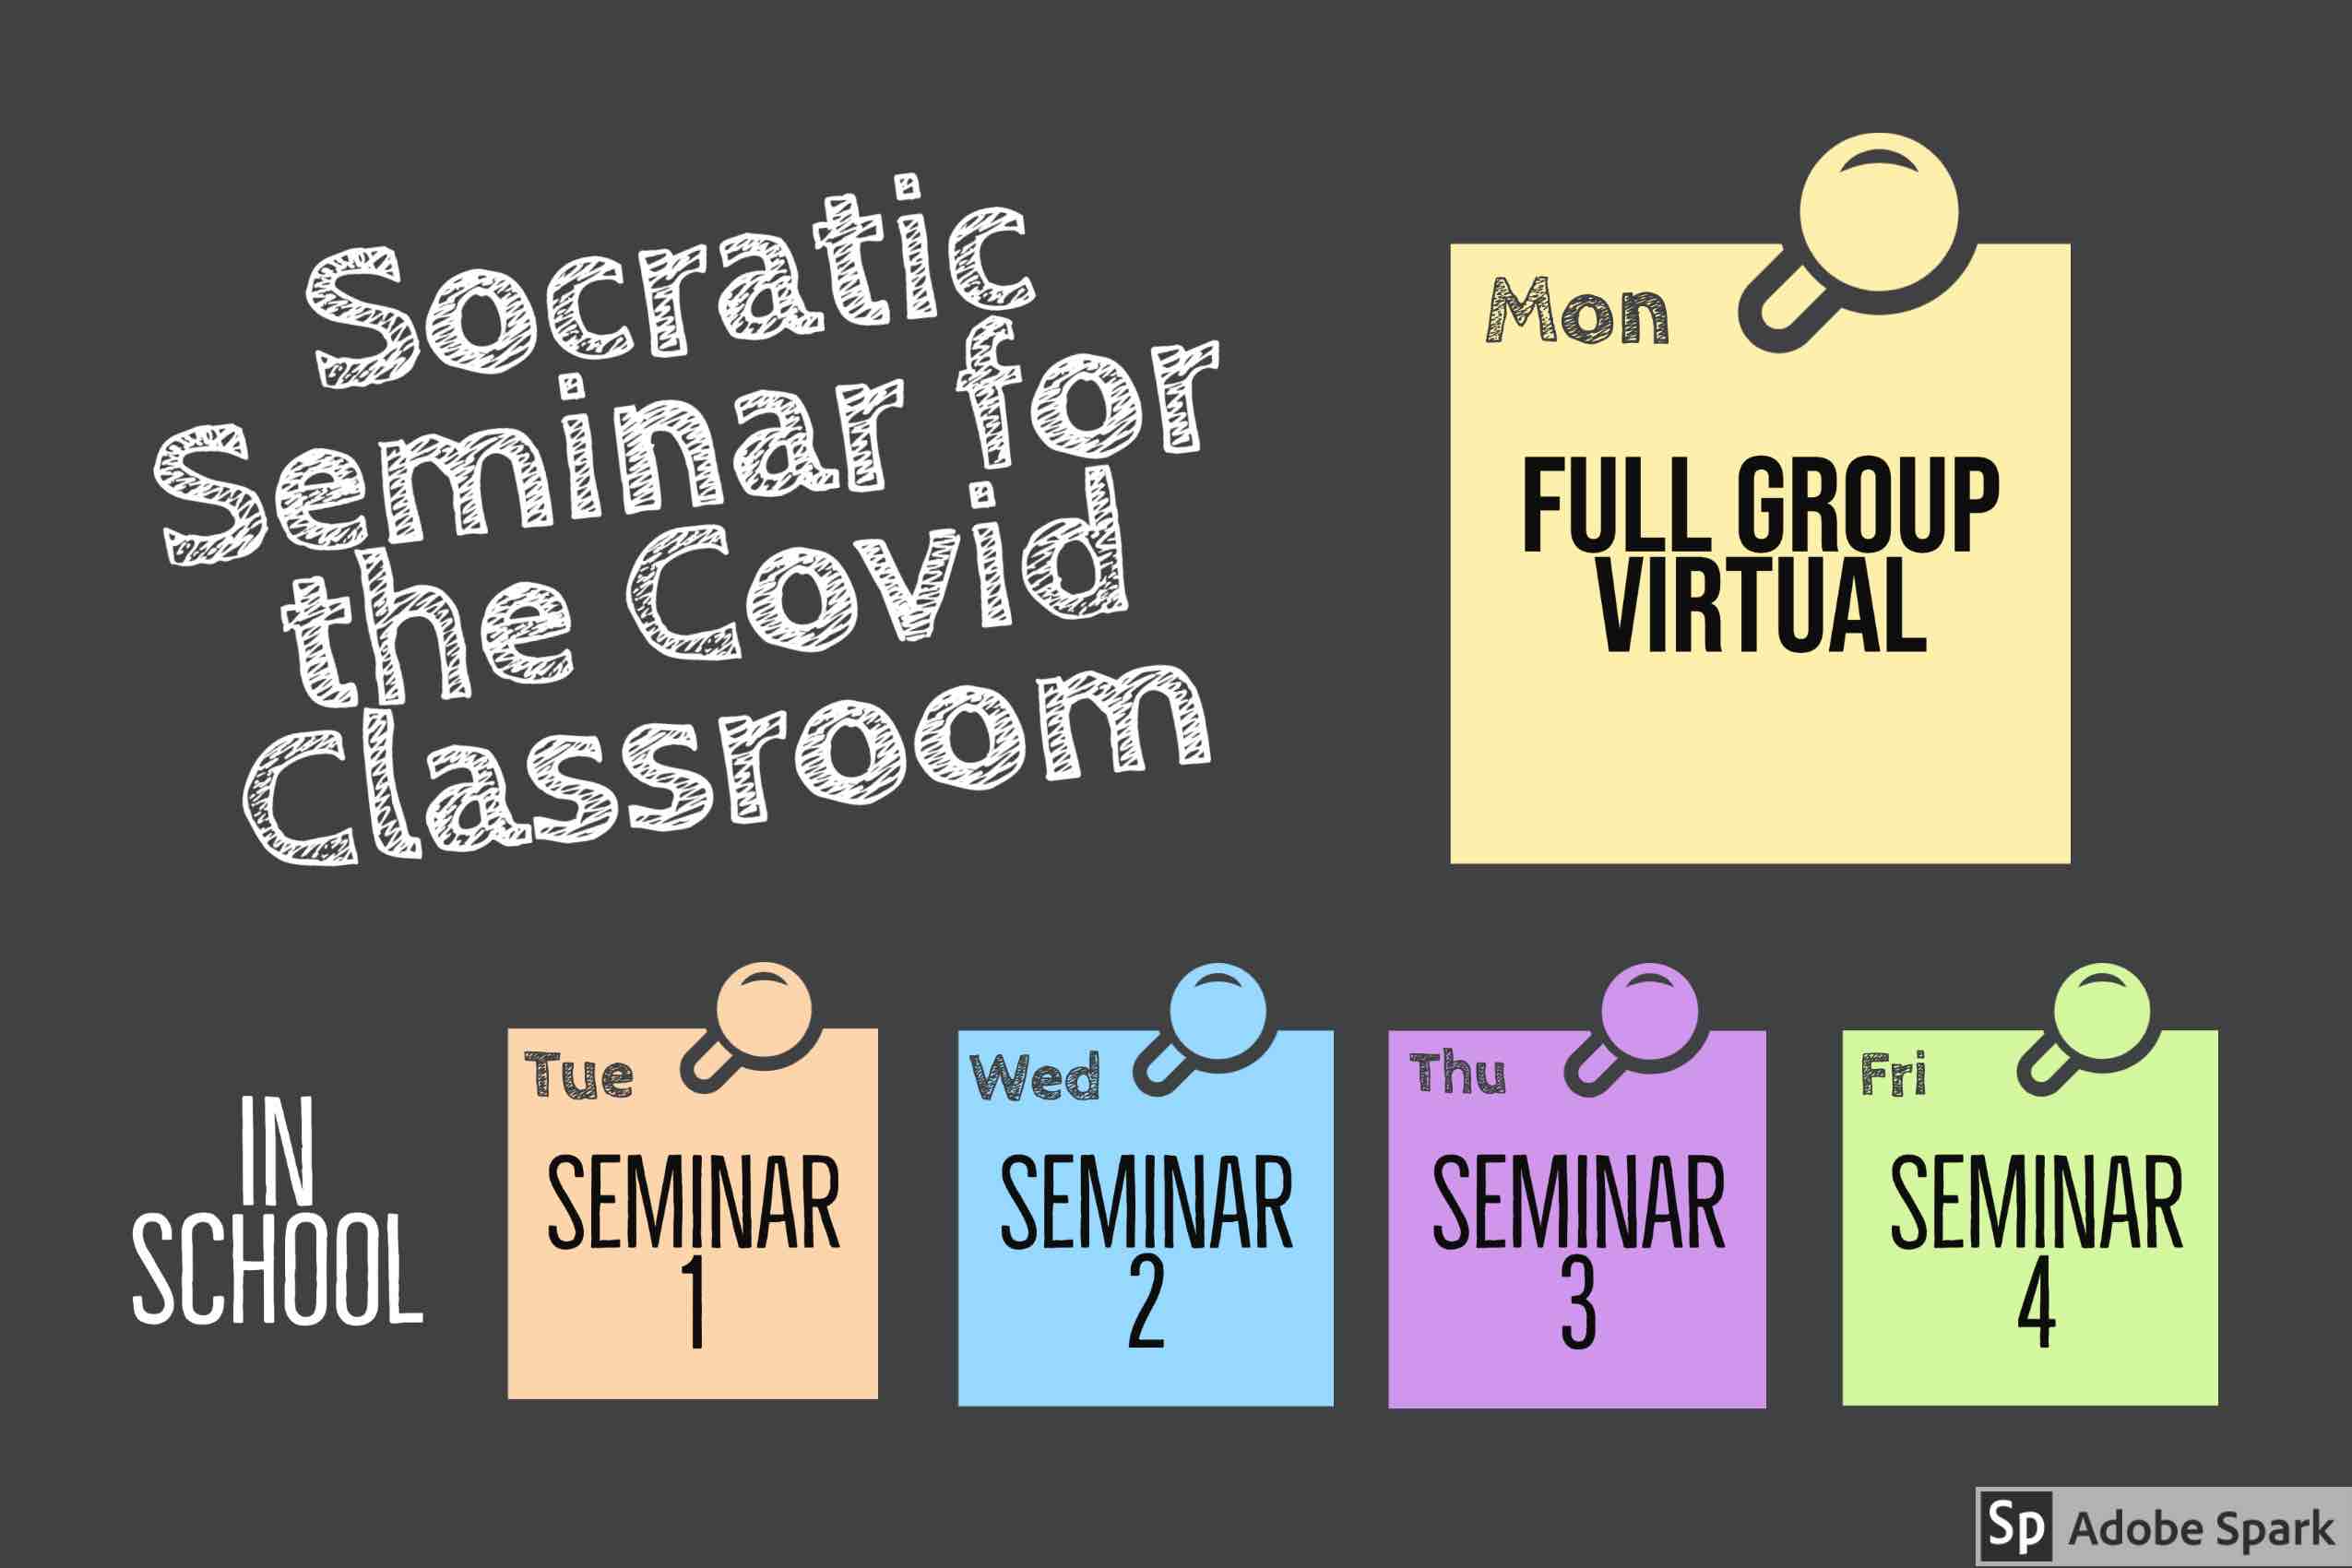 Socratic Seminar for the Covid Classroom